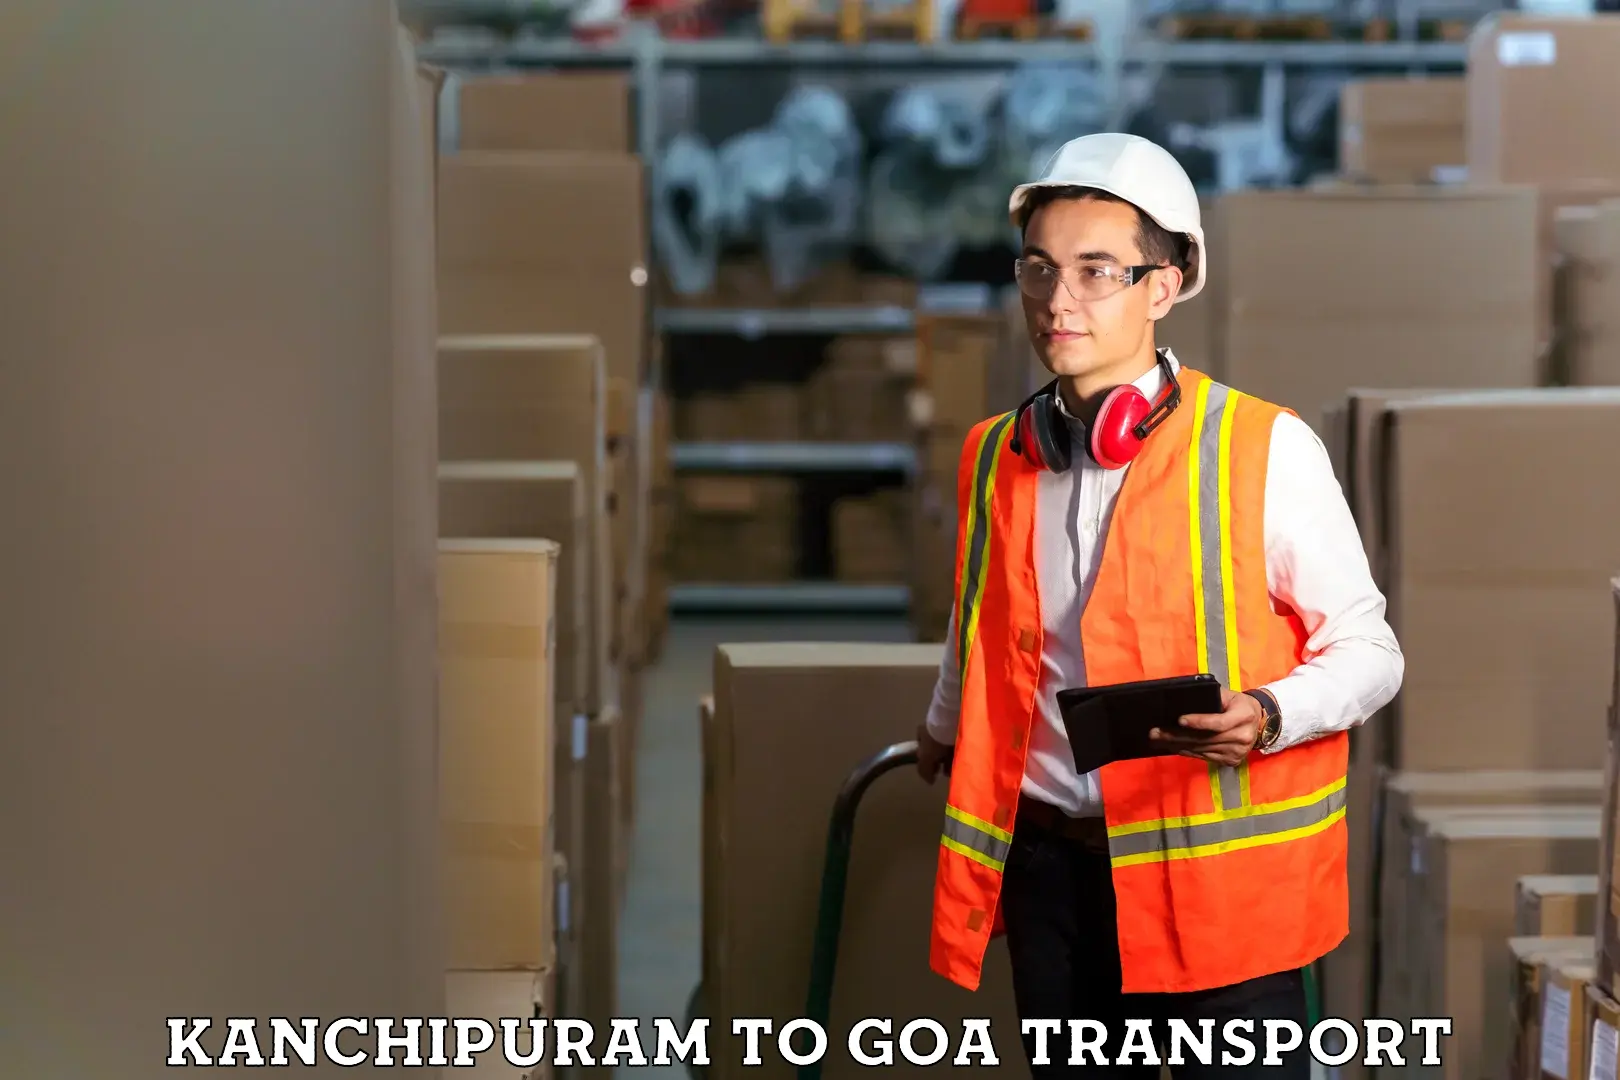 Commercial transport service Kanchipuram to IIT Goa